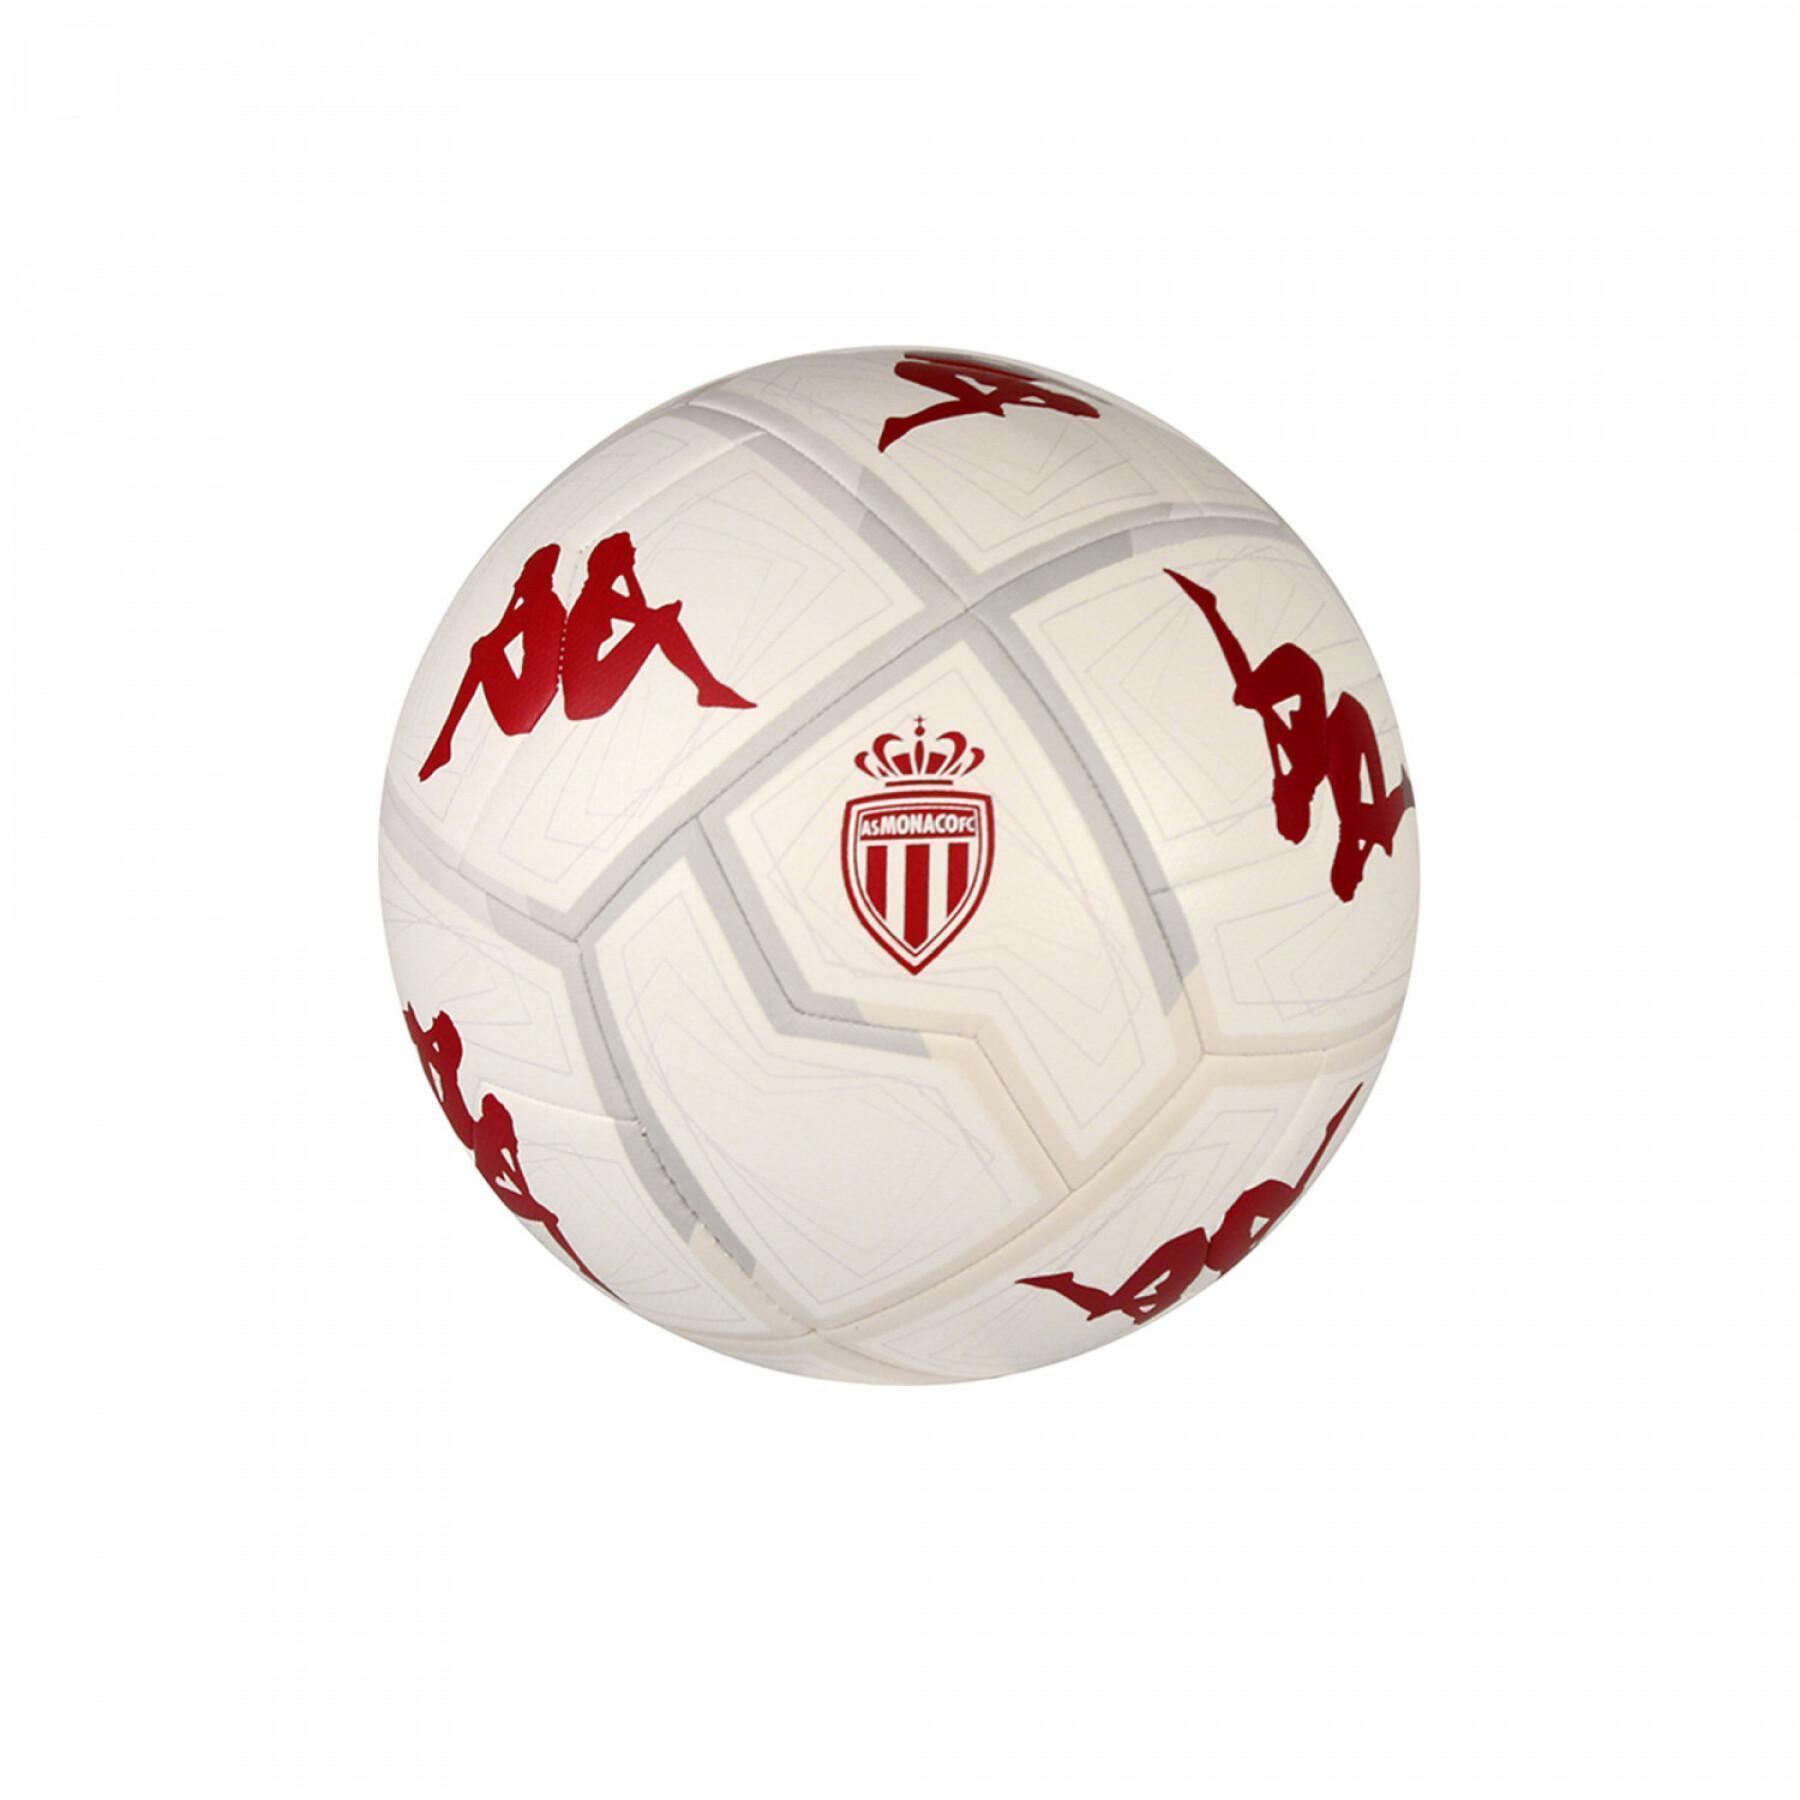 Balloon AS Monaco Player 20.3G 